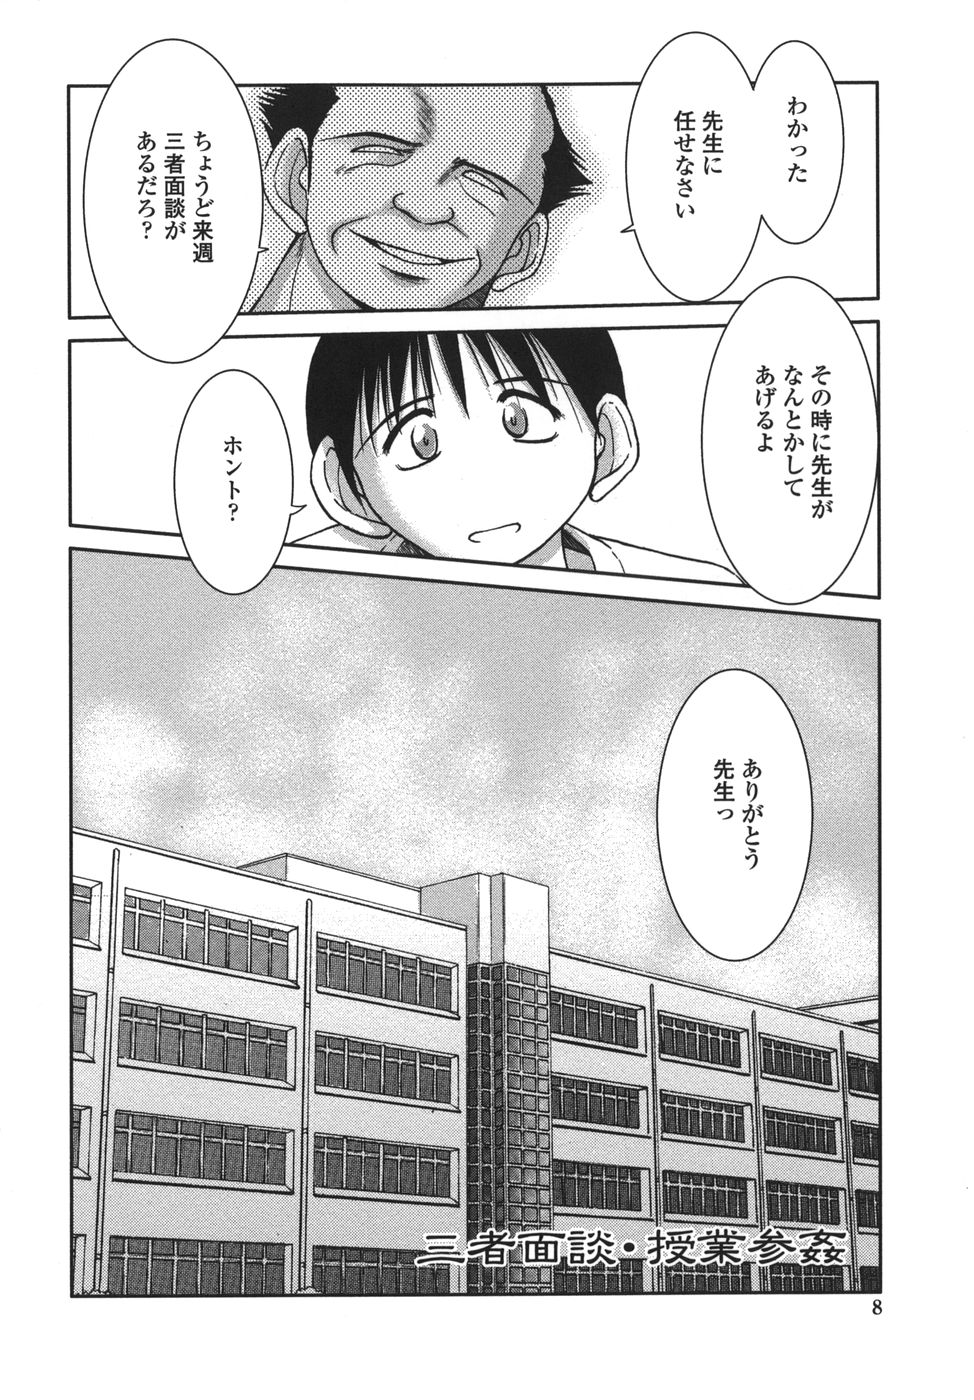 [Shuusaku Chiba] Sunaba no Aruji page 8 full